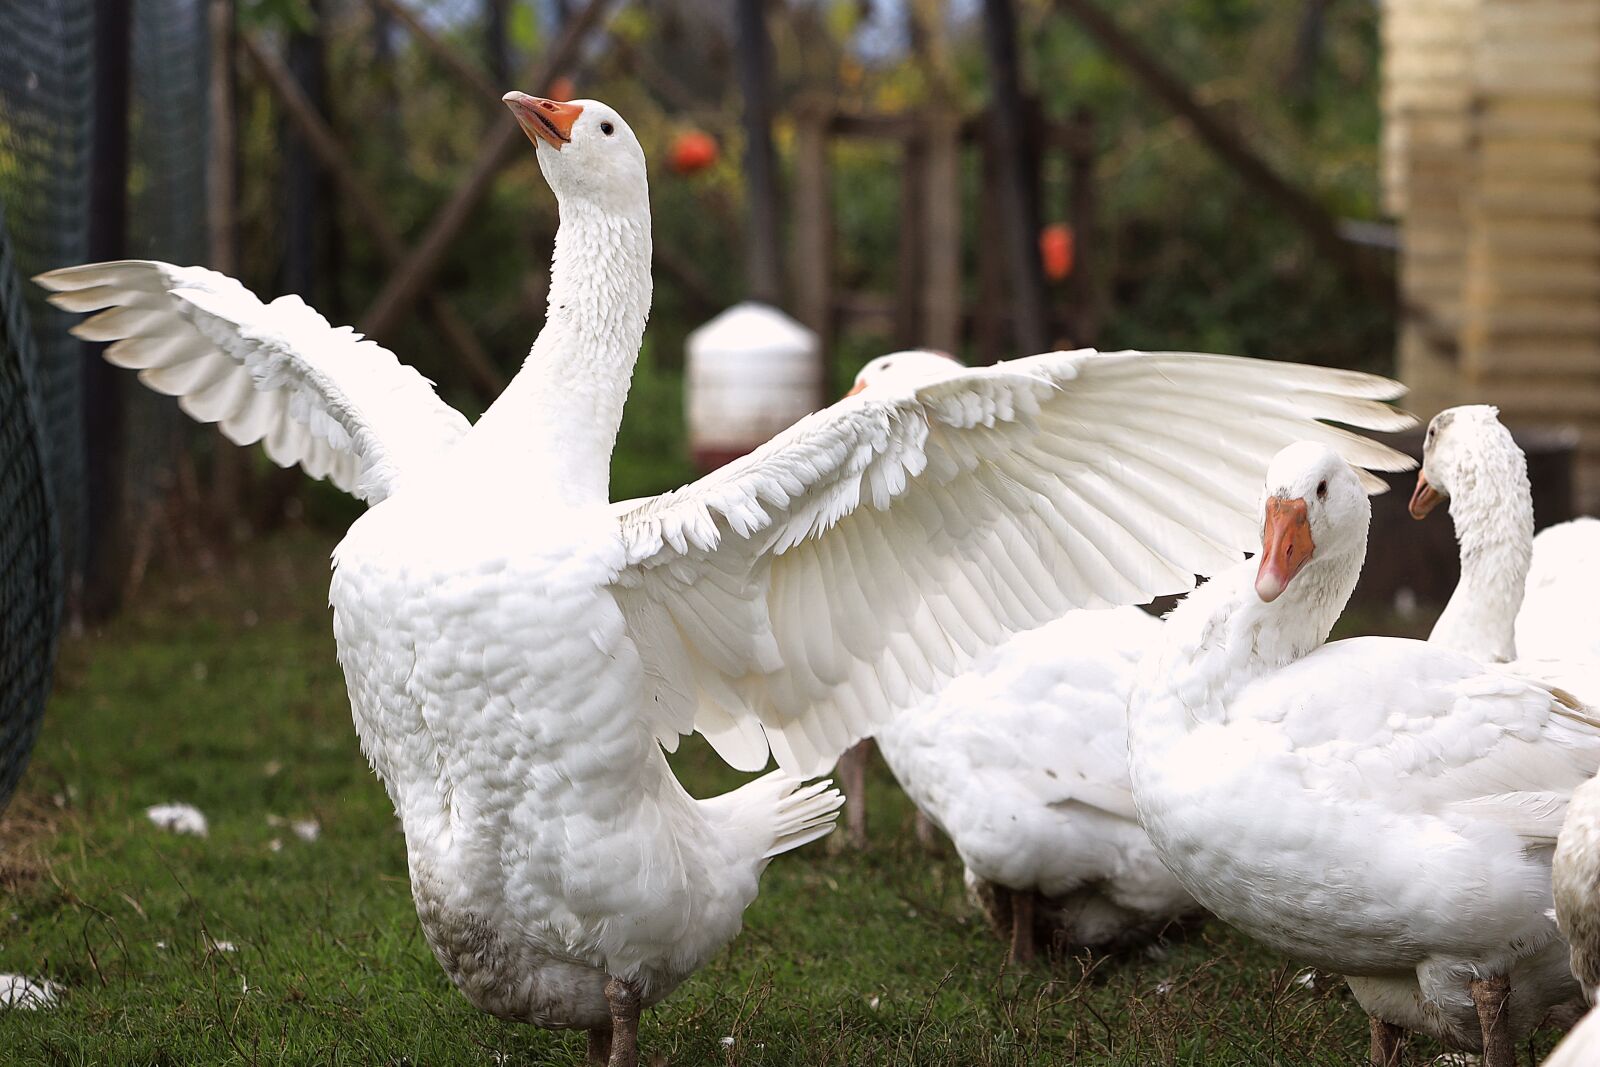 Canon EOS R sample photo. Goose, bird, poultry photography